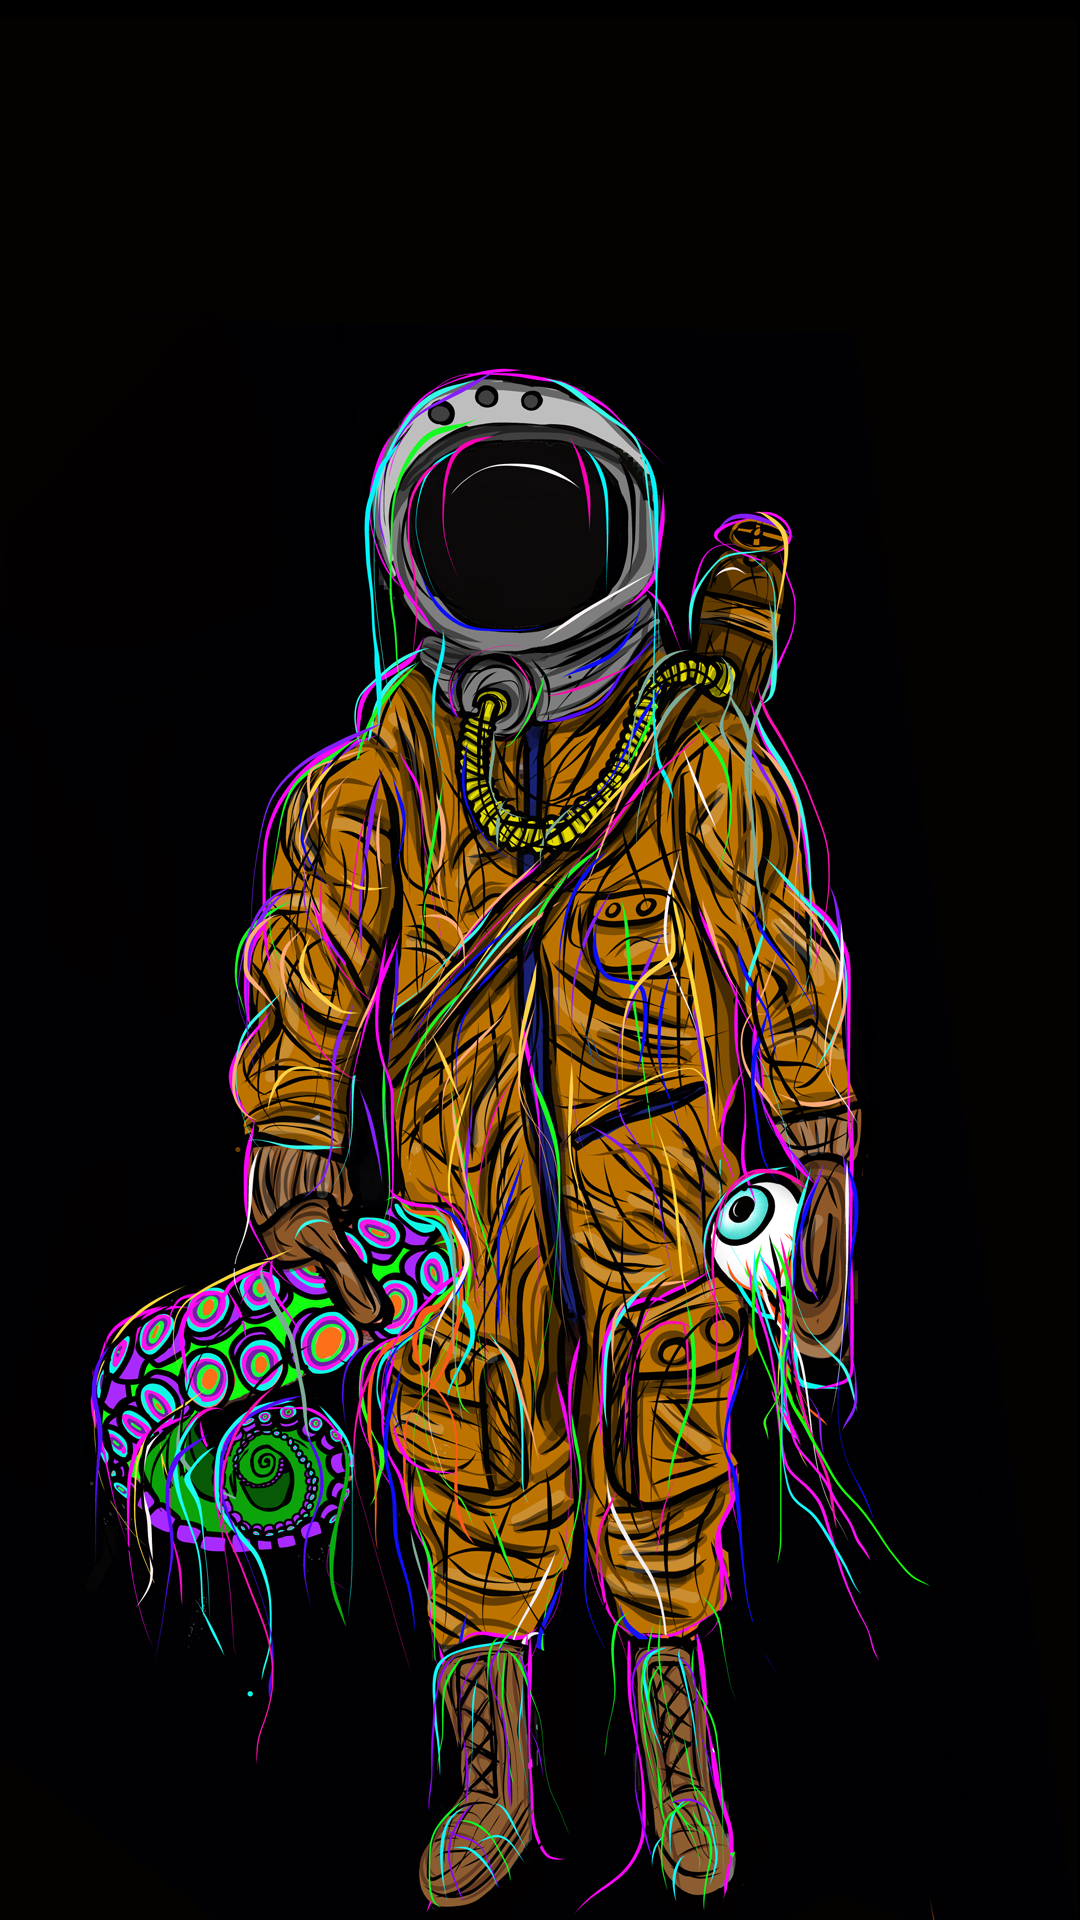 General 1080x1920 dark astronaut artwork simple background portrait display